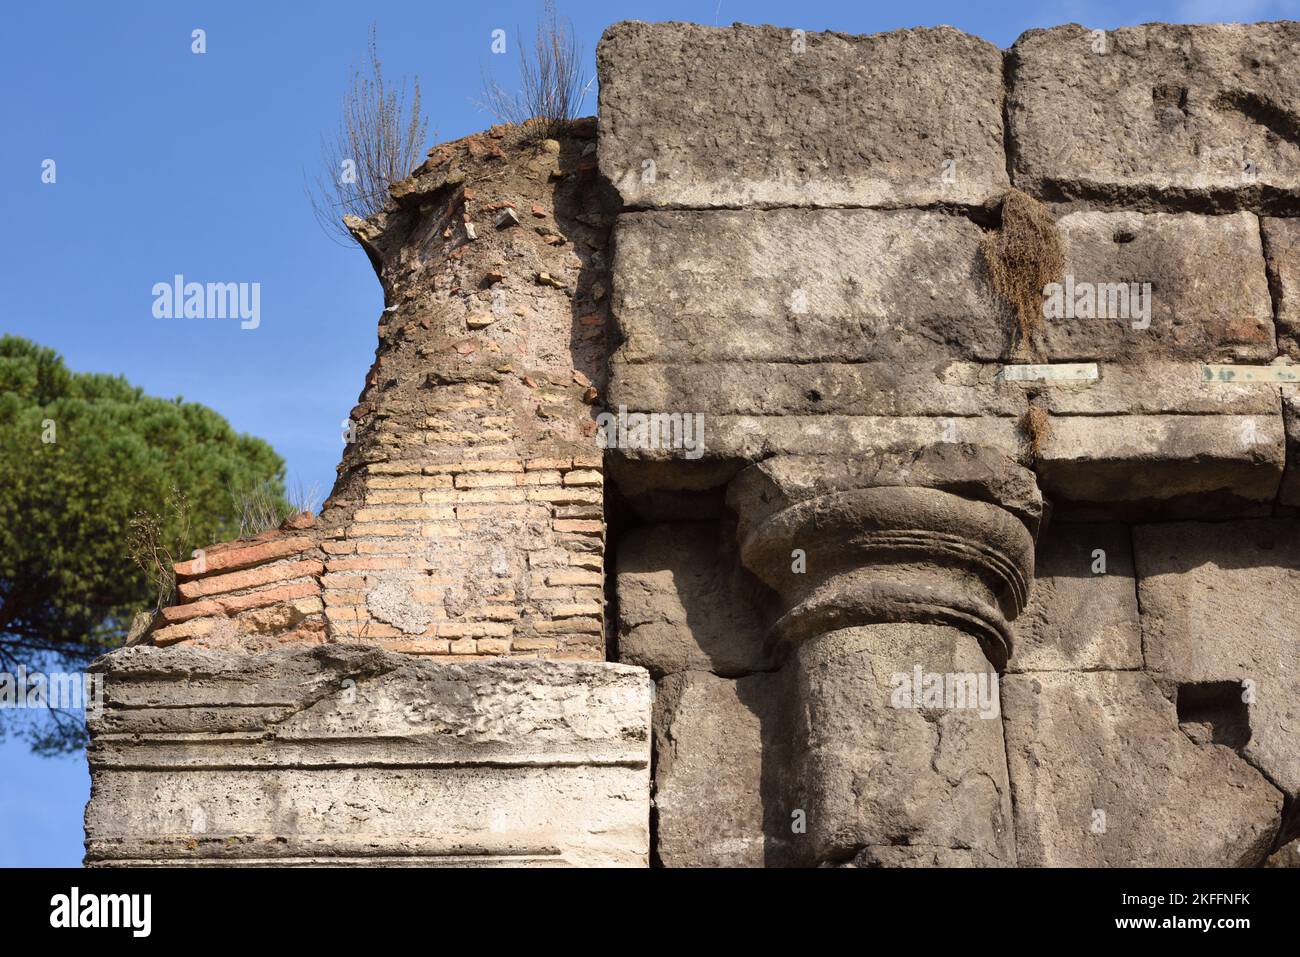 Italia, Roma, Vico Jugario, Porticus Triumphalis, portico repubblicano romano Foto Stock